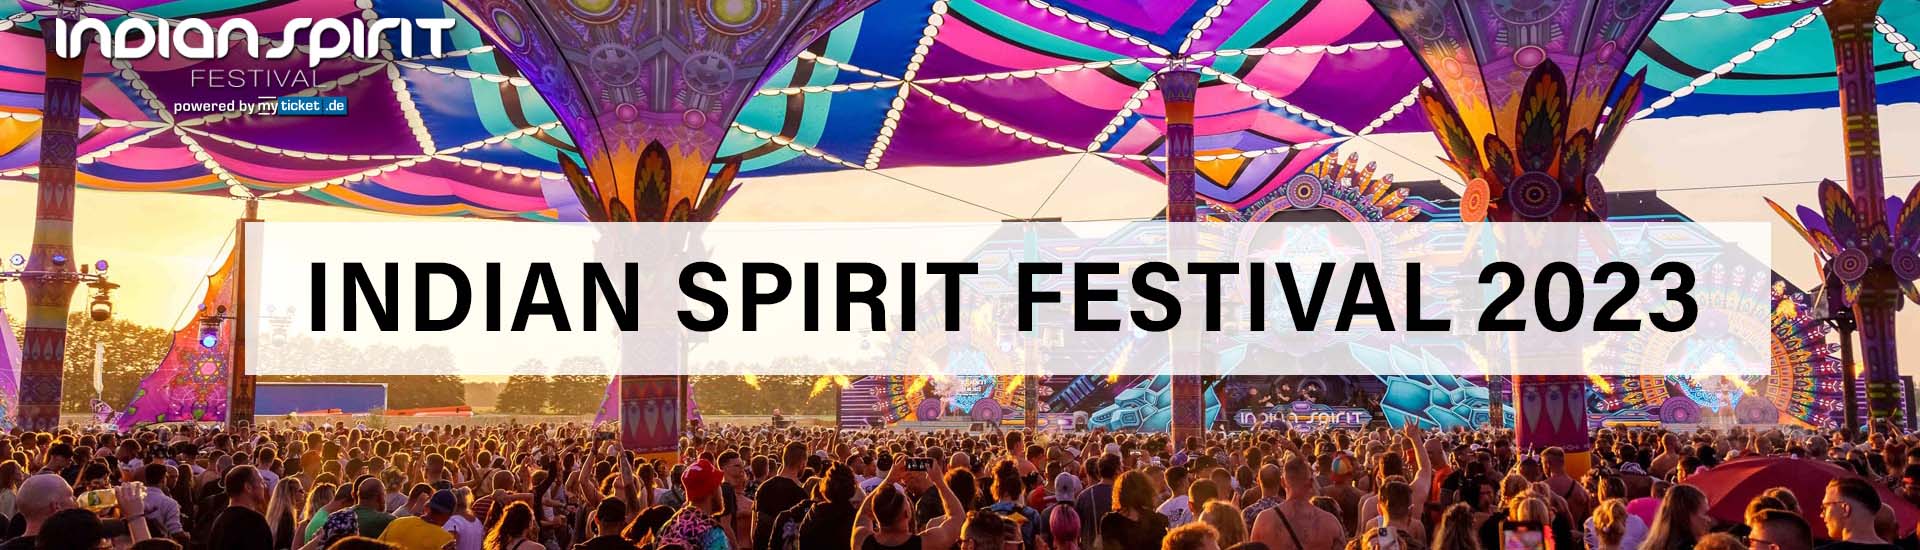 Indian Spirit Festival 2023